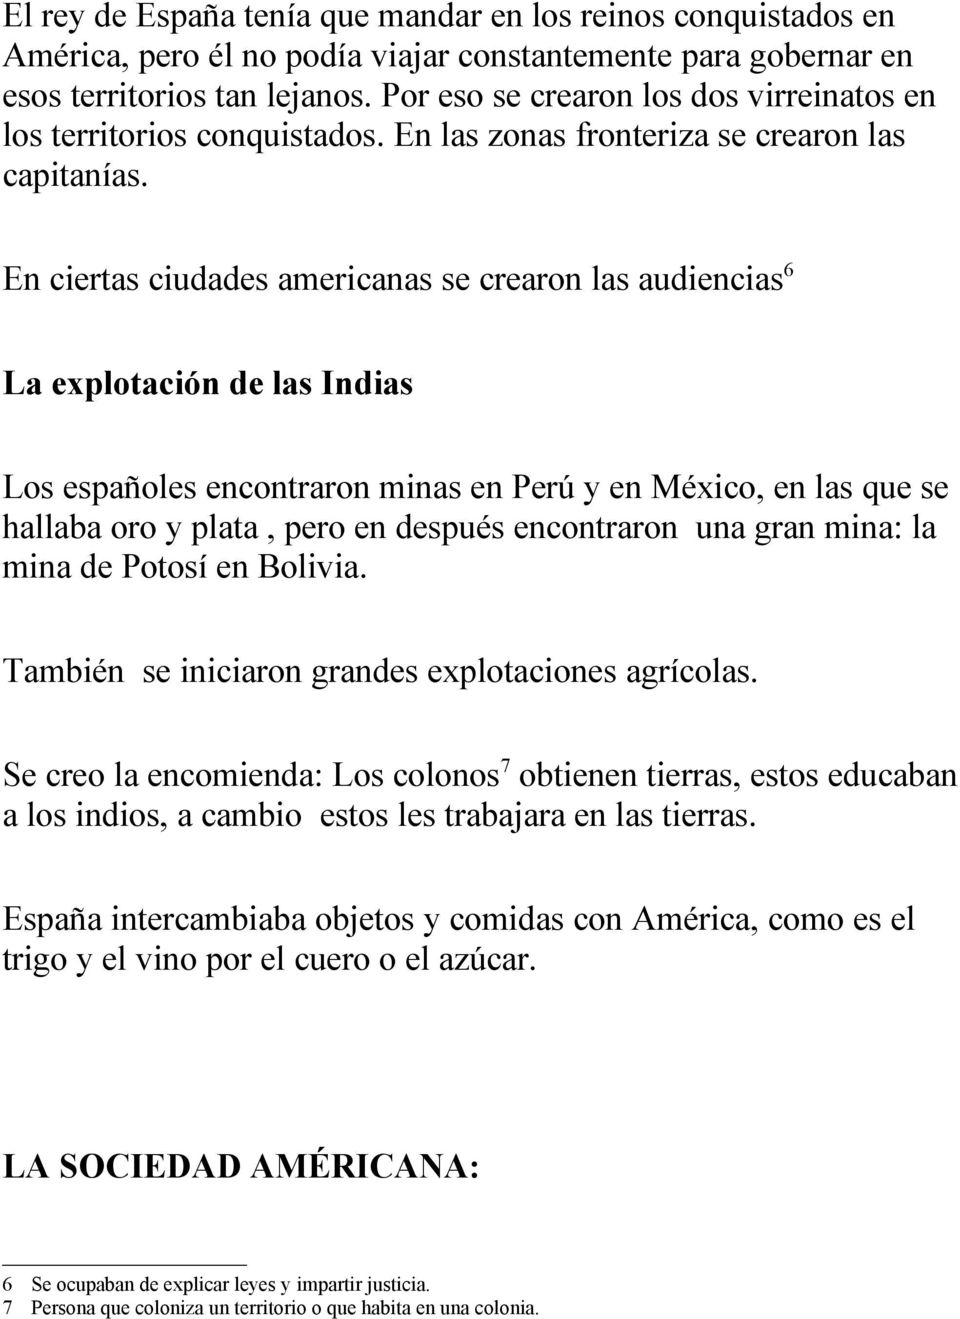 En ciertas ciudades americanas se crearon las audiencias6 La explotación de las Indias Los españoles encontraron minas en Perú y en México, en las que se hallaba oro y plata, pero en después